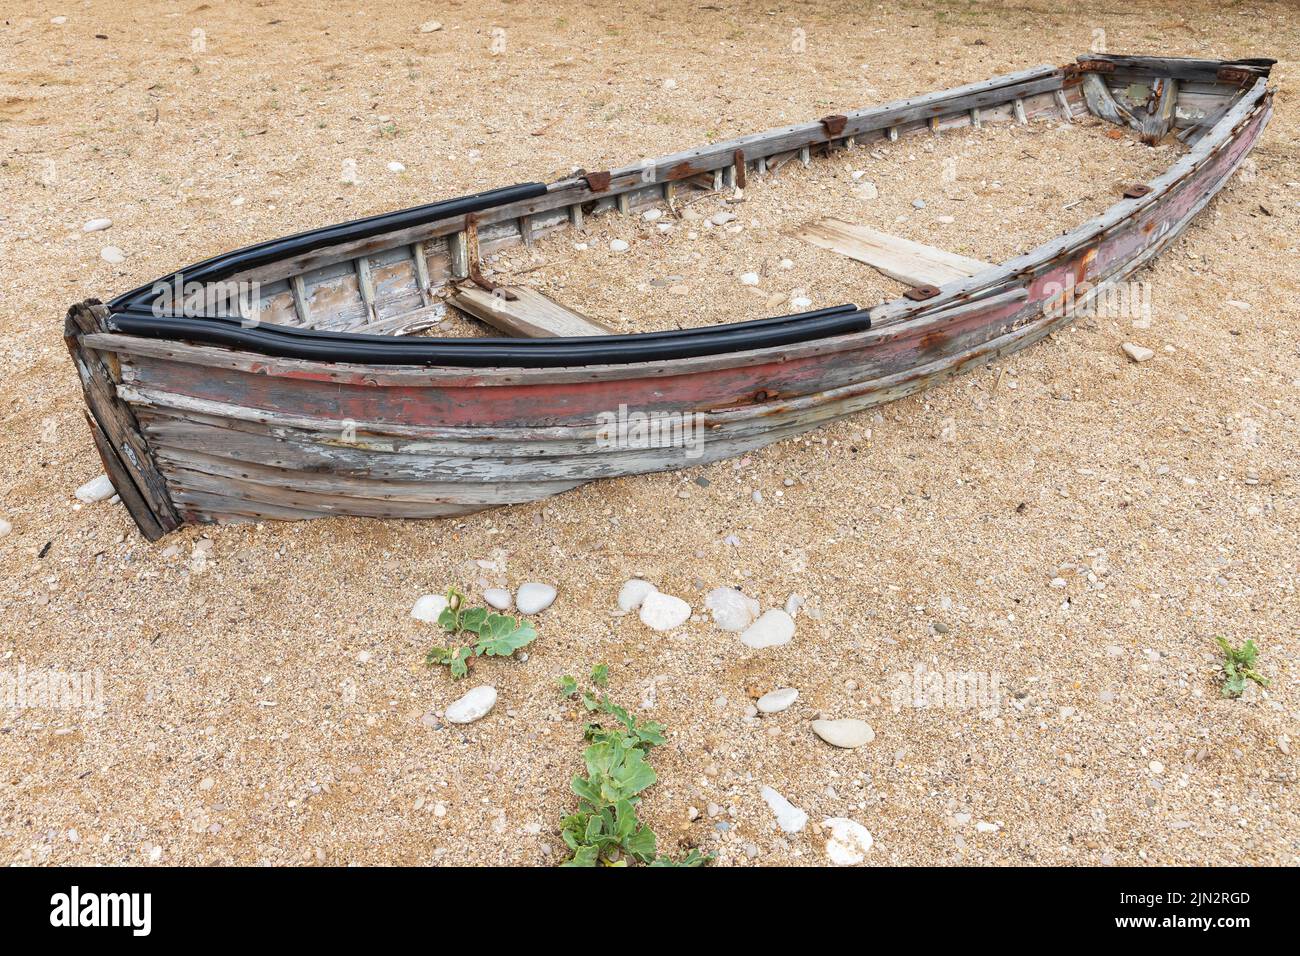 Una vecchia barca di legno abbandonata si trova su una costa sabbiosa vuota durante il giorno Foto Stock